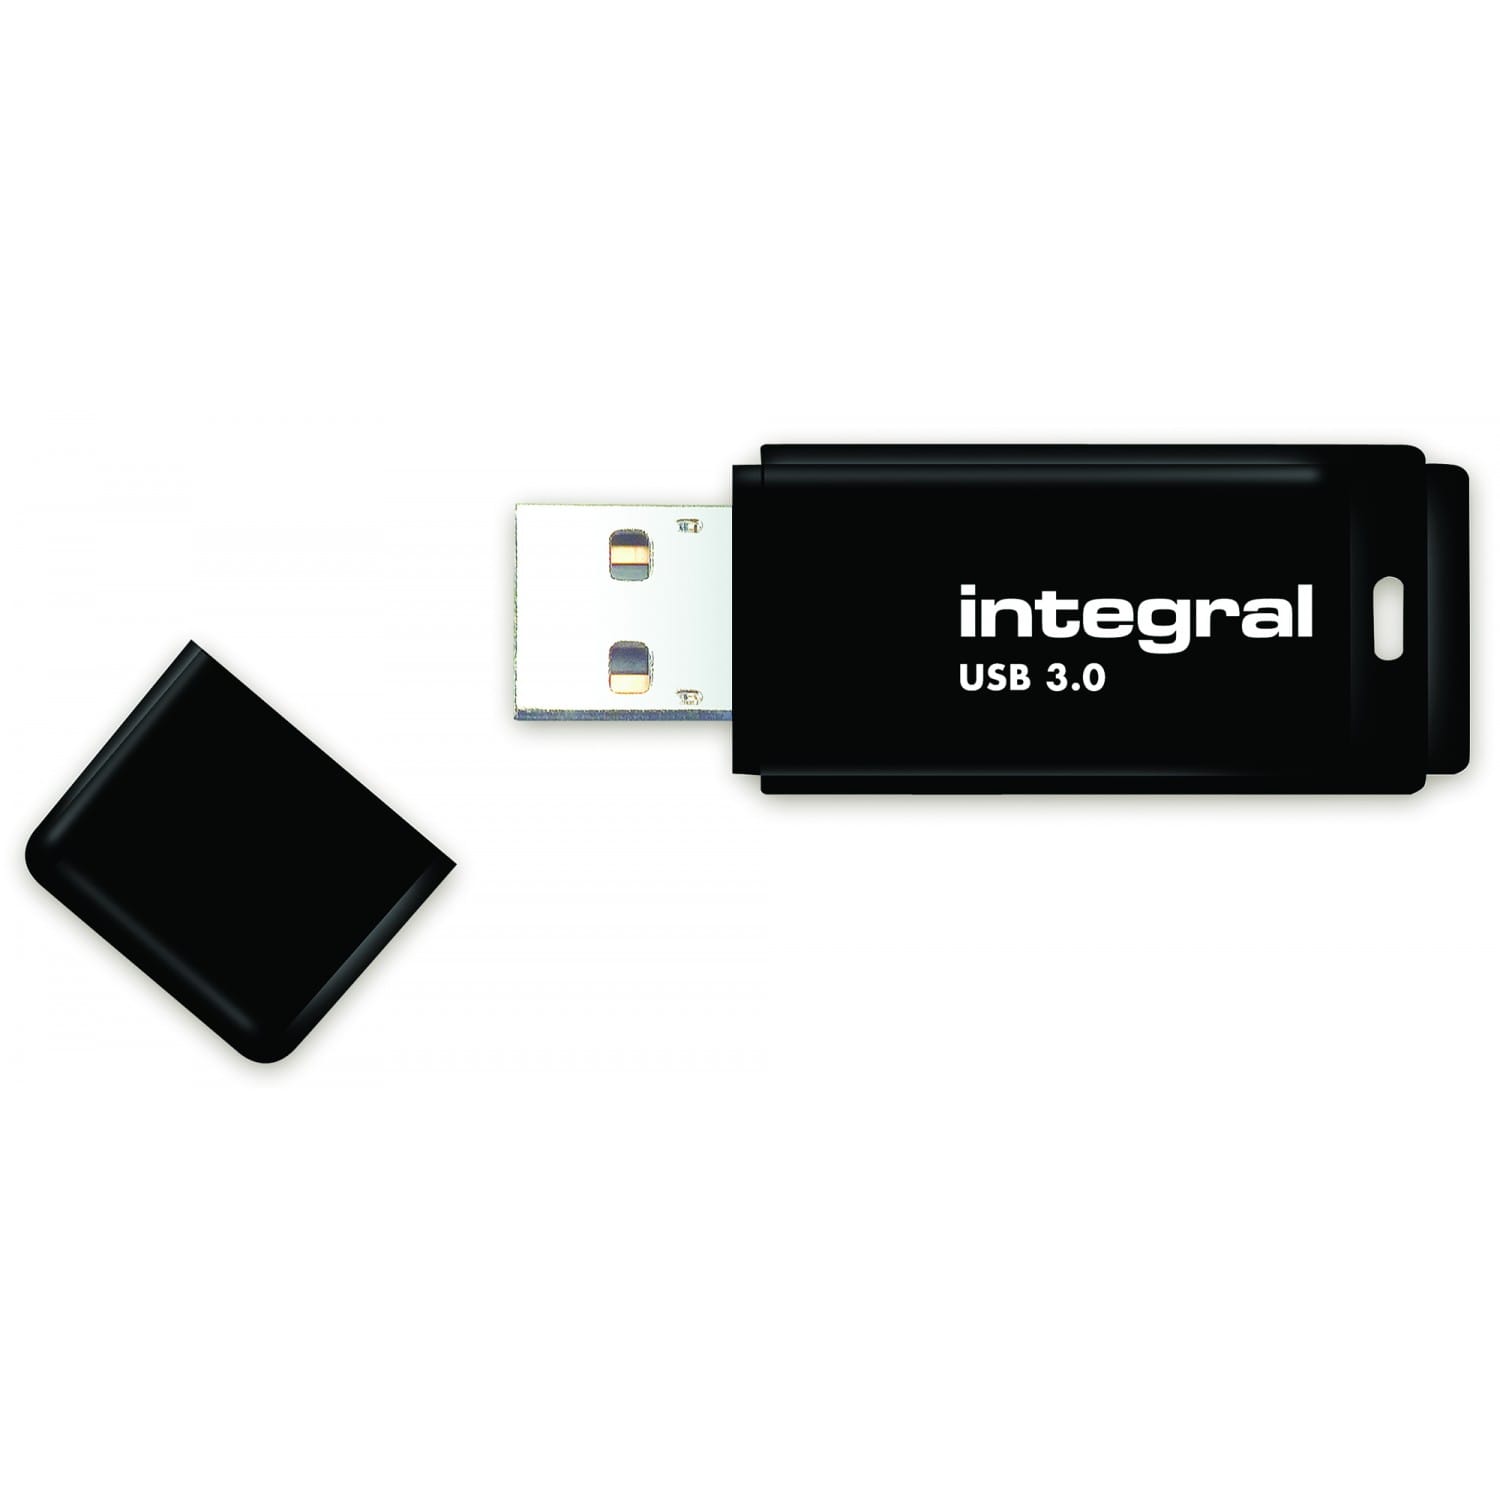 Les clés USB 3.0 du catalogue 